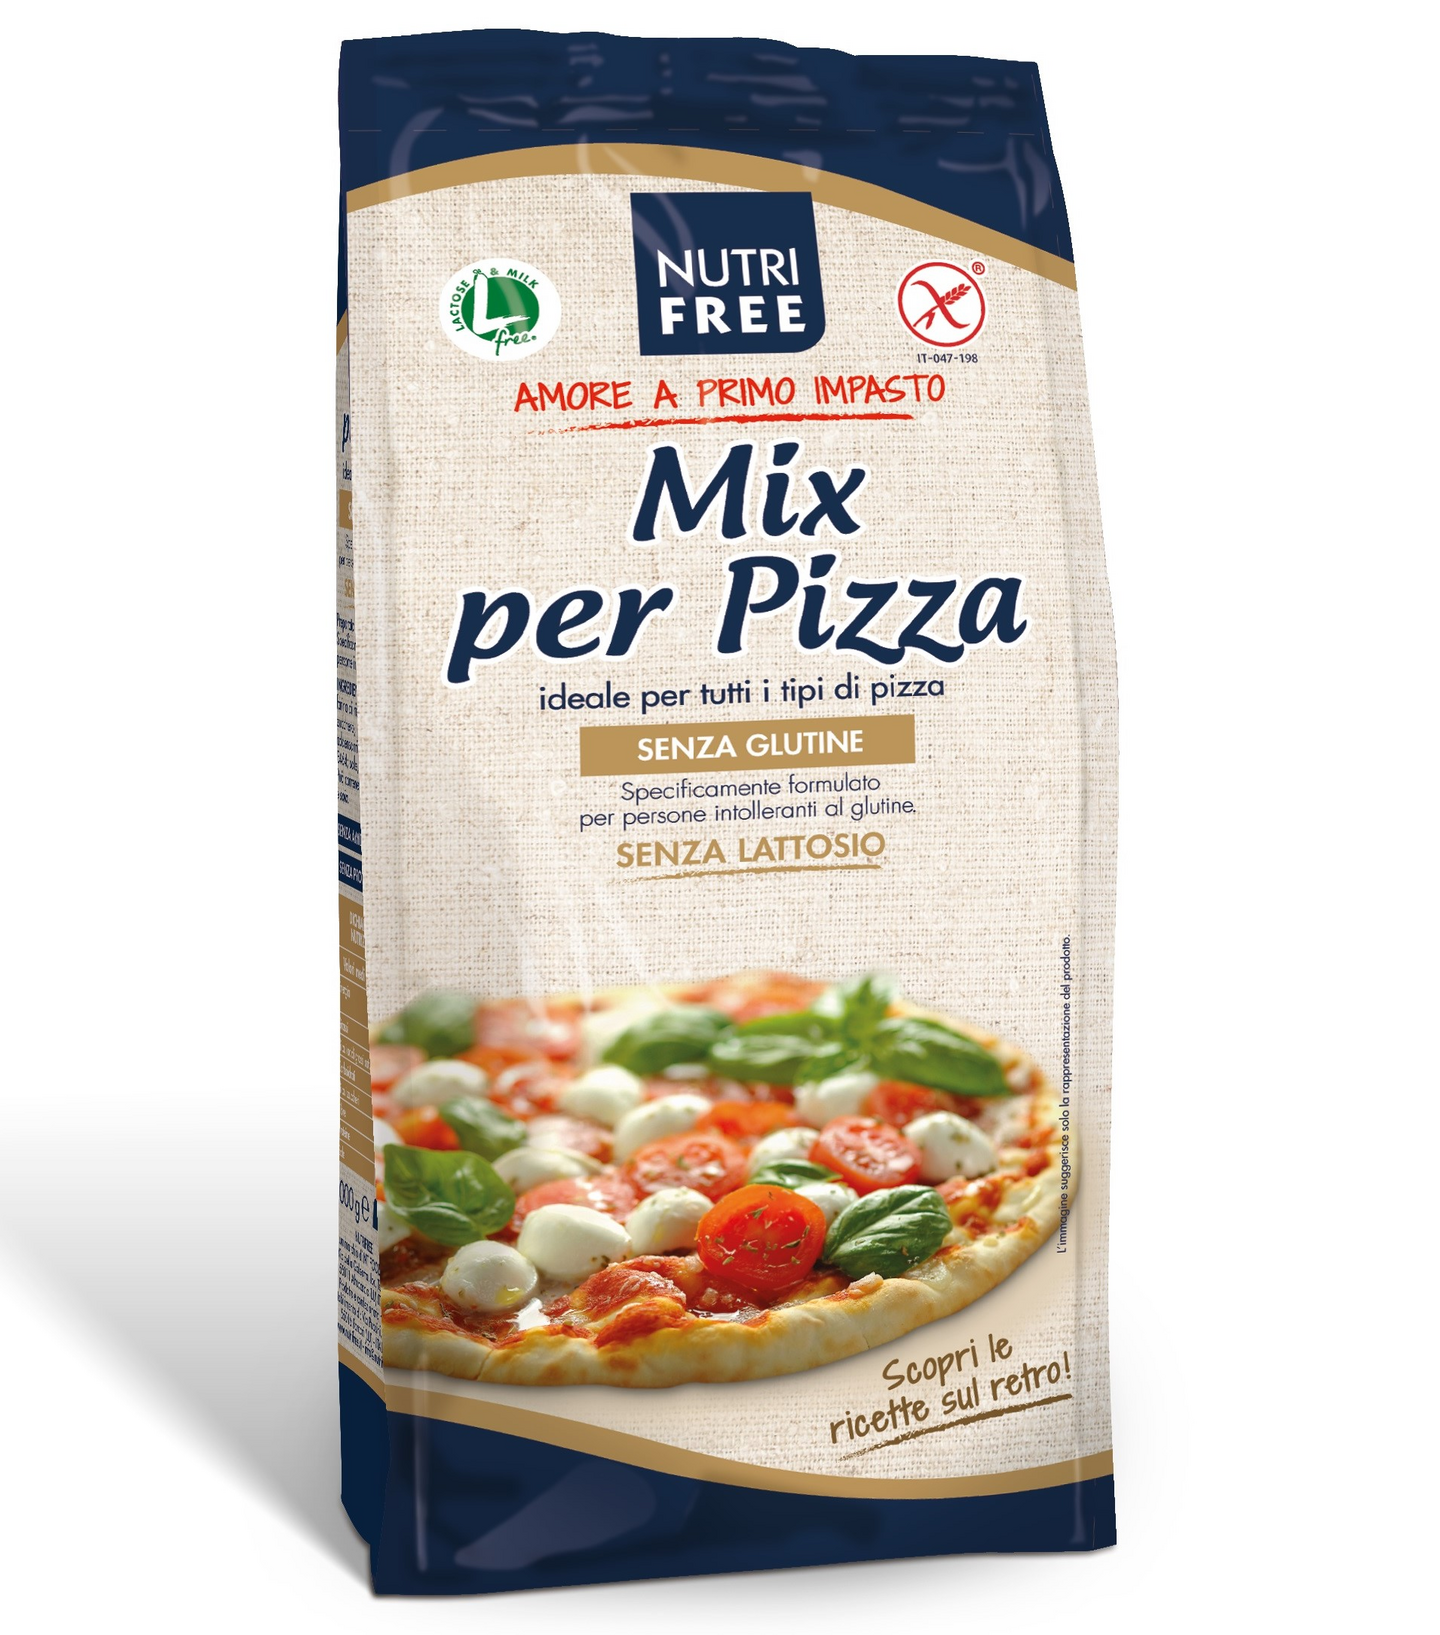 Nutrifree Mix per Pizza gluteeniton pizzajauhoseos 1kg